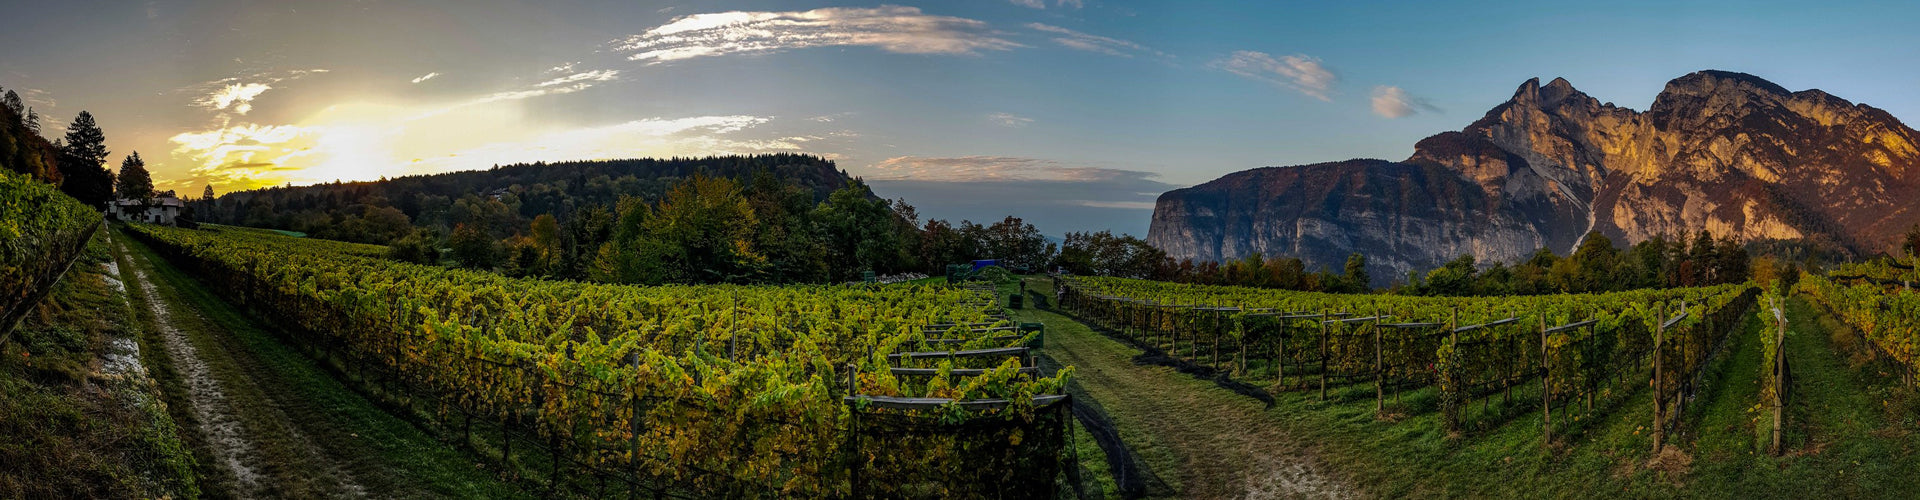 Tiefenbrunner Vineyards in the Südtirol, Alto Adige Region of Italy